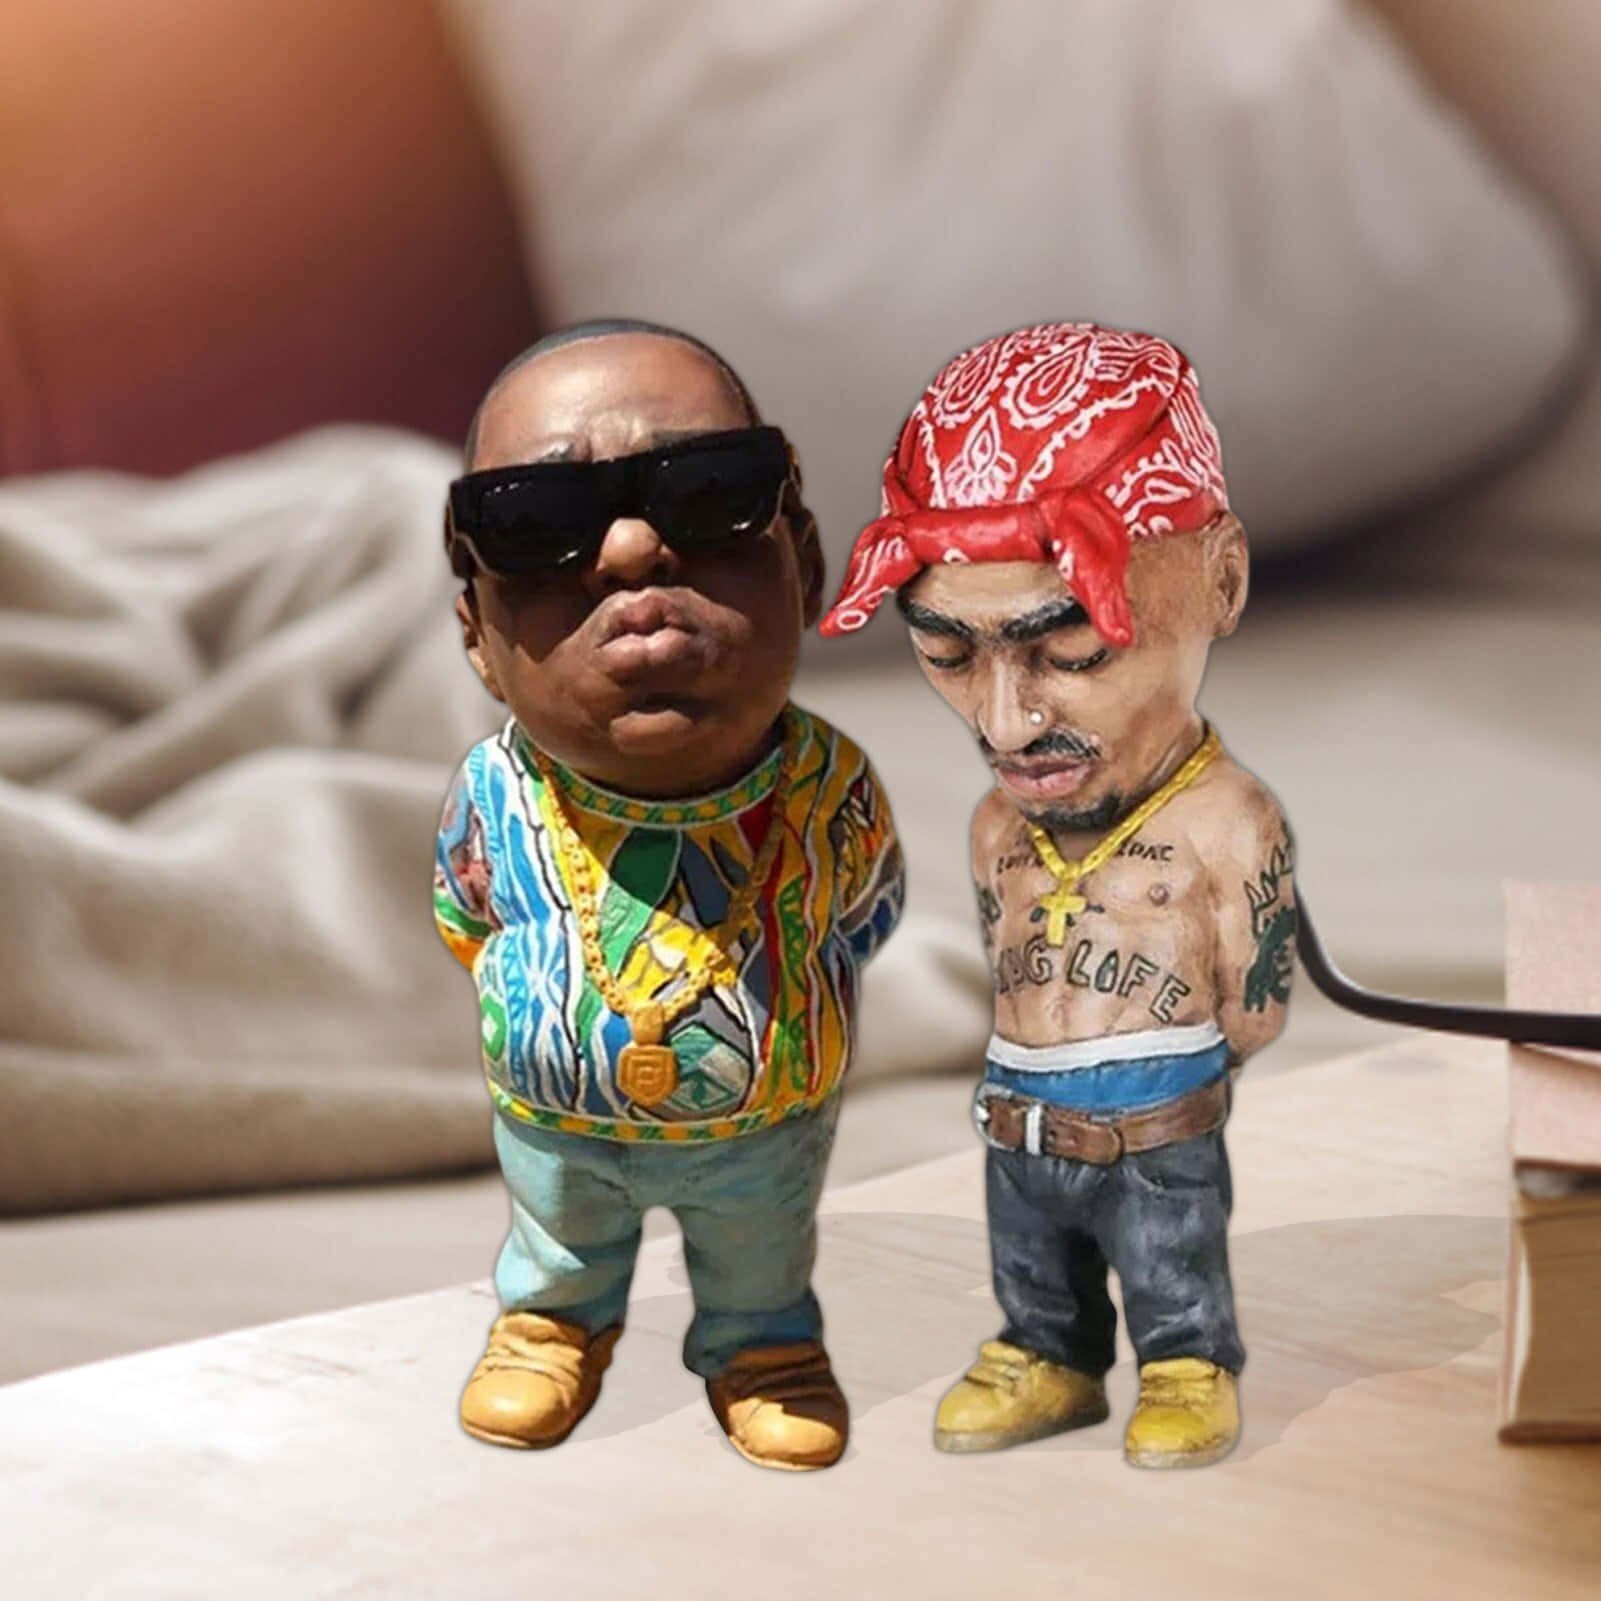 Divertidasimágenes De Los Raperos Biggie Y Tupac